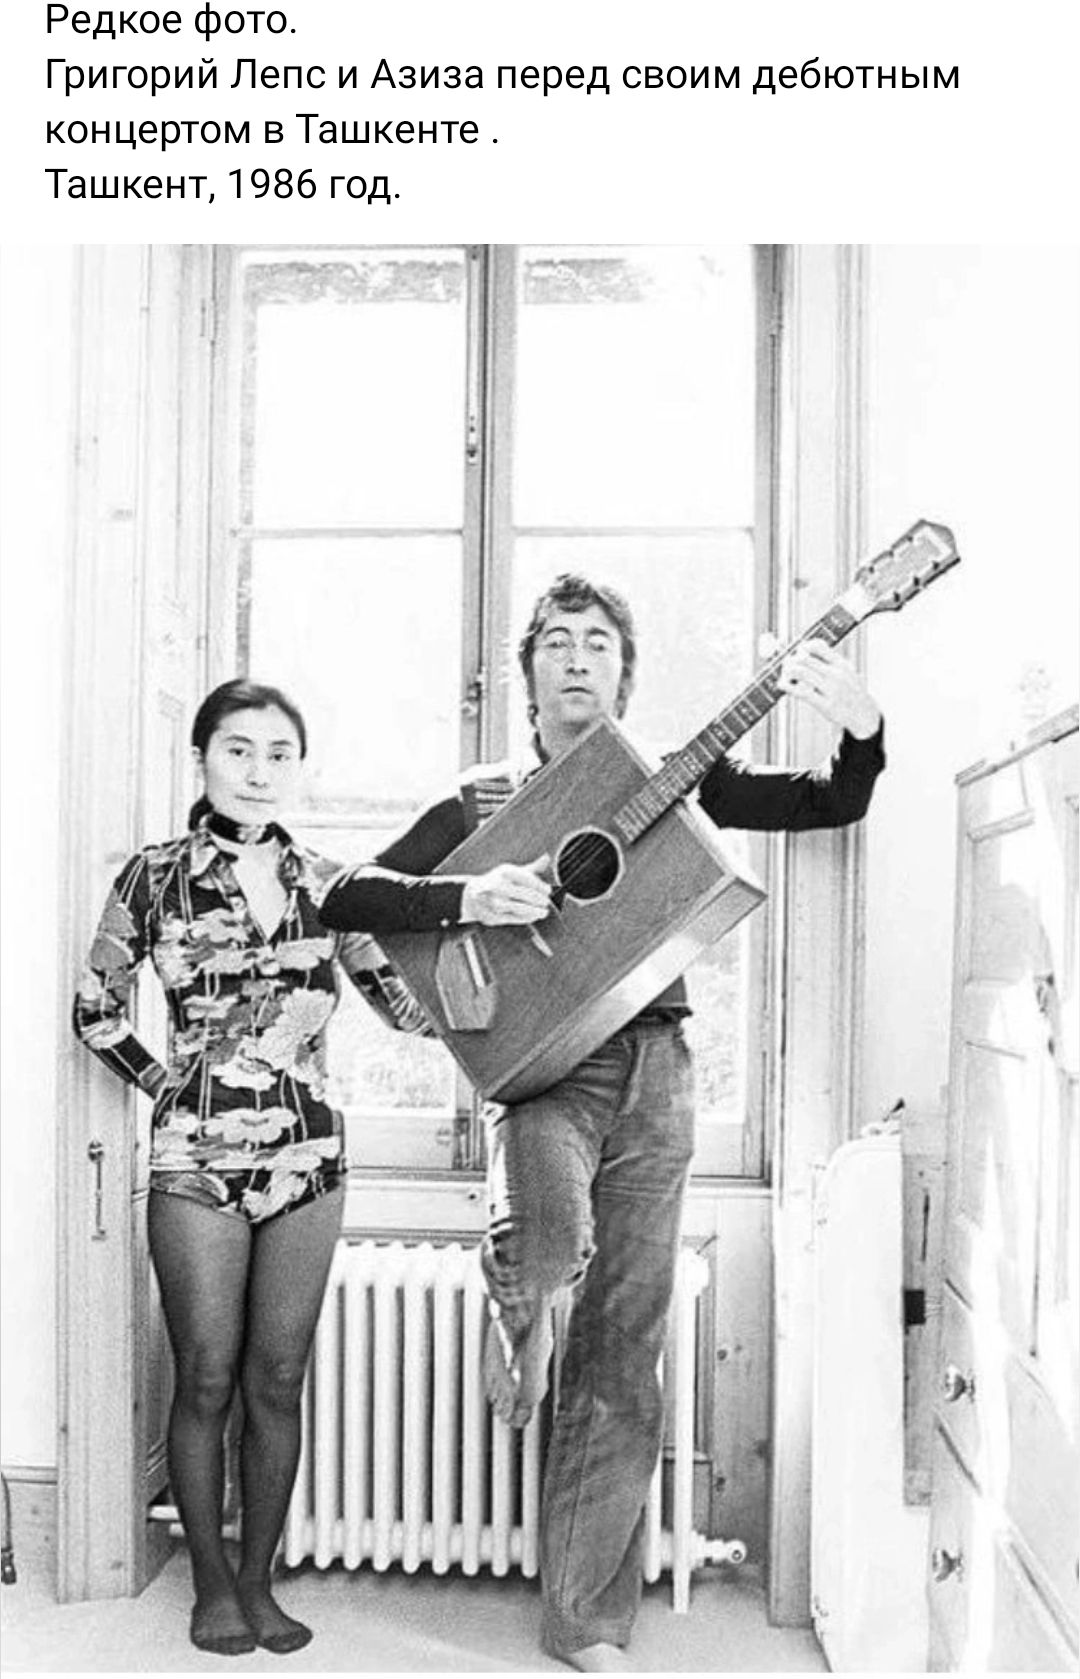 Редкое Фото Григорий Лепс и Азиза перед своим дебютным концертом в Ташкенте Ташкент 86 год